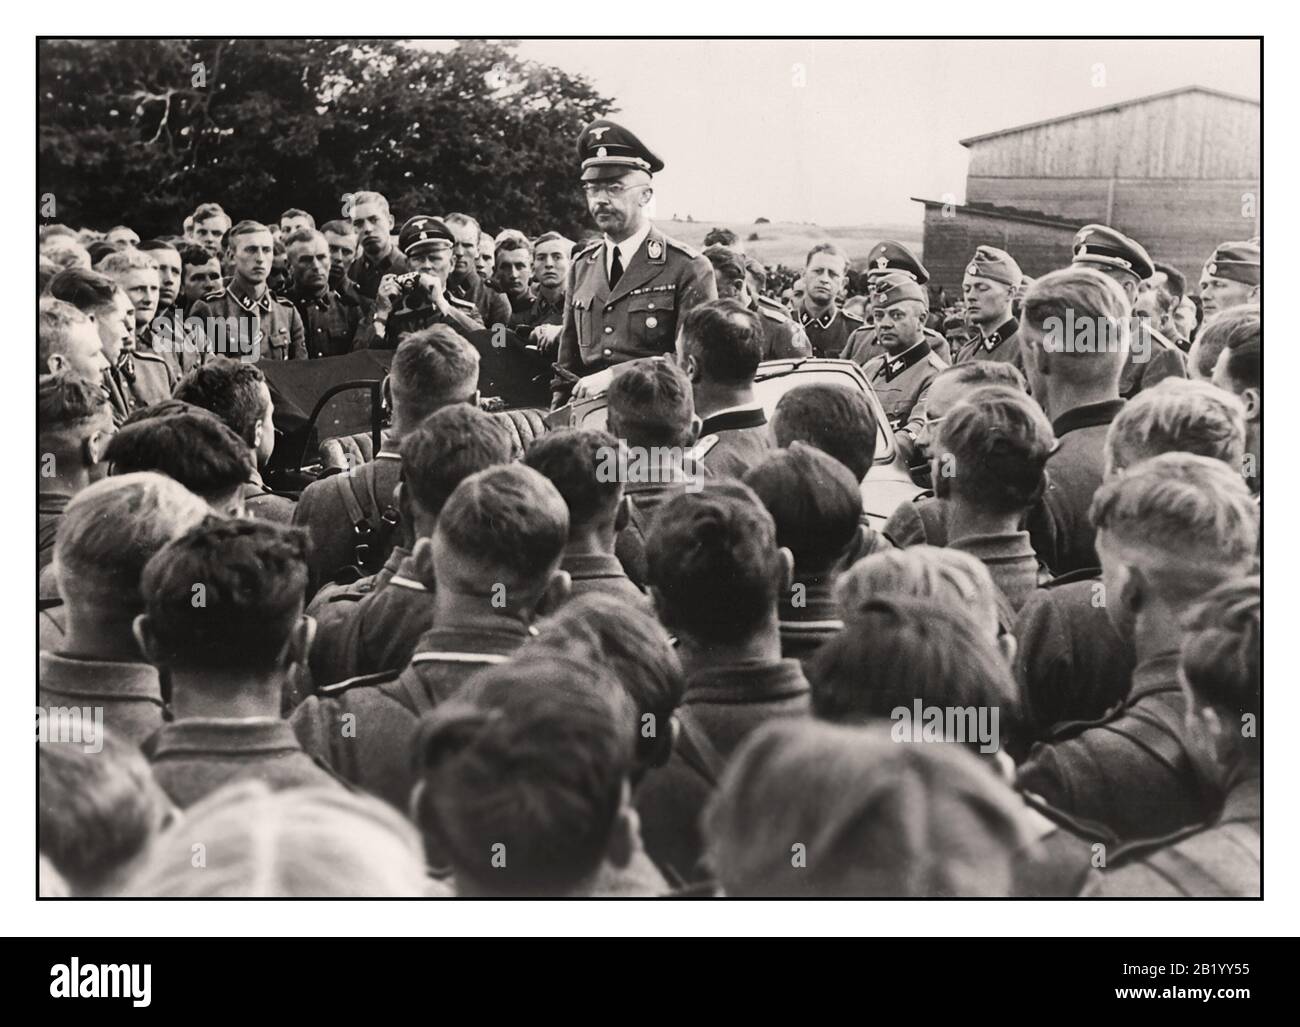 Noticias Nazi vintage Propaganda imagen del Reichsführer de las SS Heinrich Himmler dirigiéndose a un grupo de soldados en un regimiento de caballería de las Waffen SS en los territorios orientales de Polonia. II Guerra Mundial WW2 1940's. Foto de stock